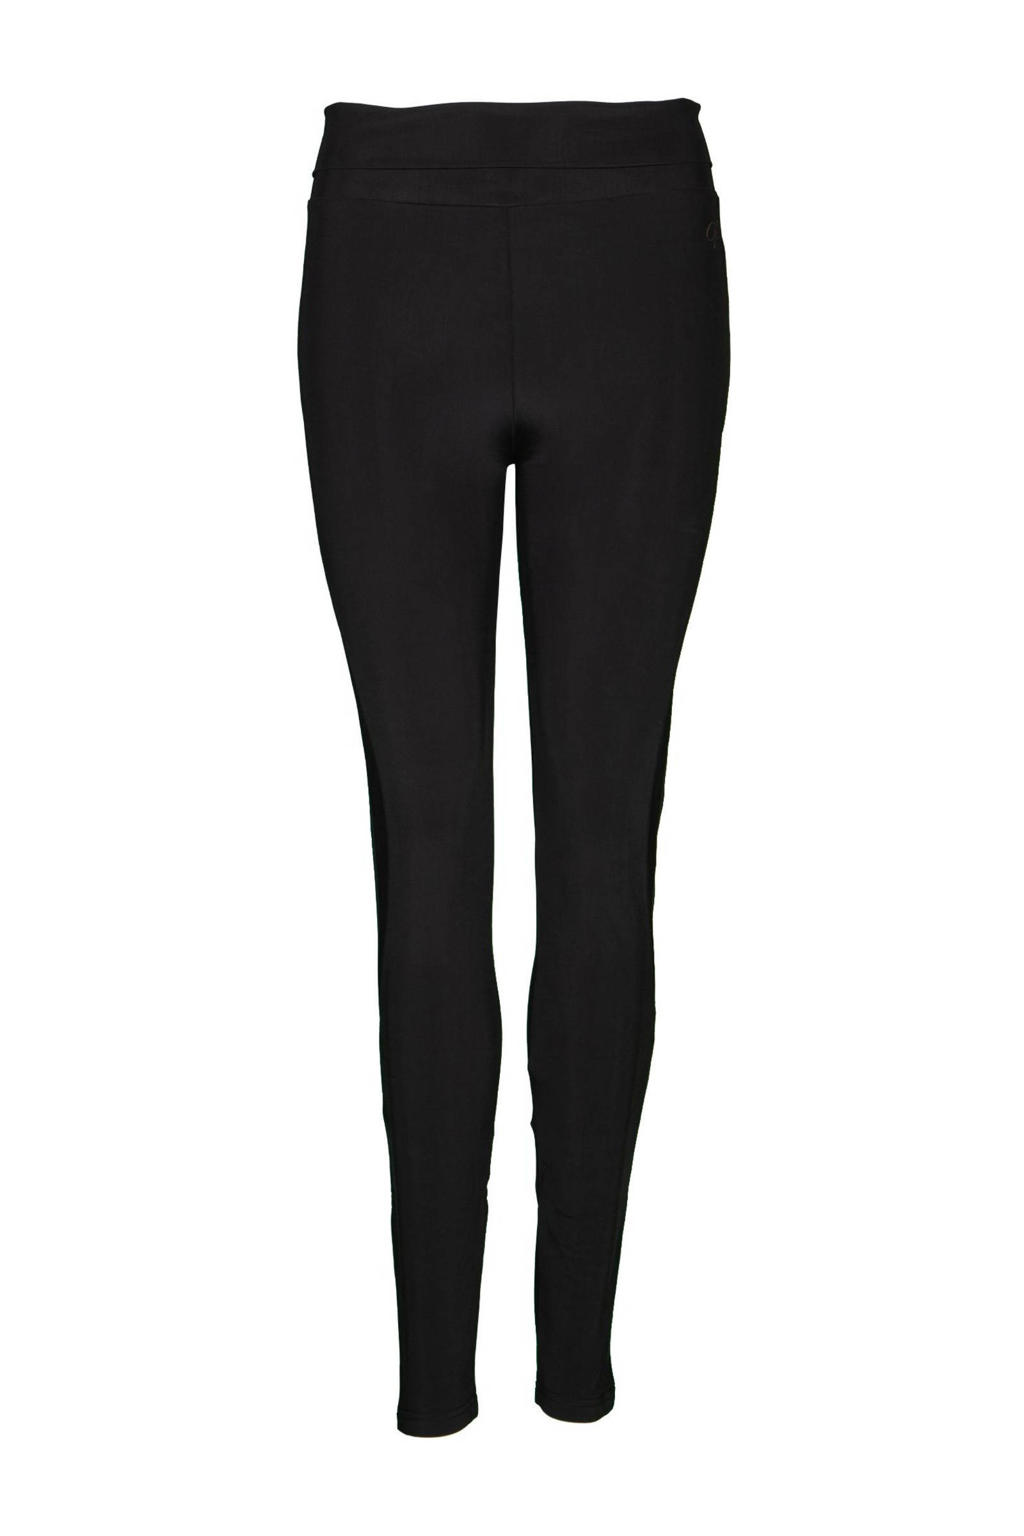 Zwarte dames Papillon sportlegging van polyester met slim fit, regular waist en elastische tailleband